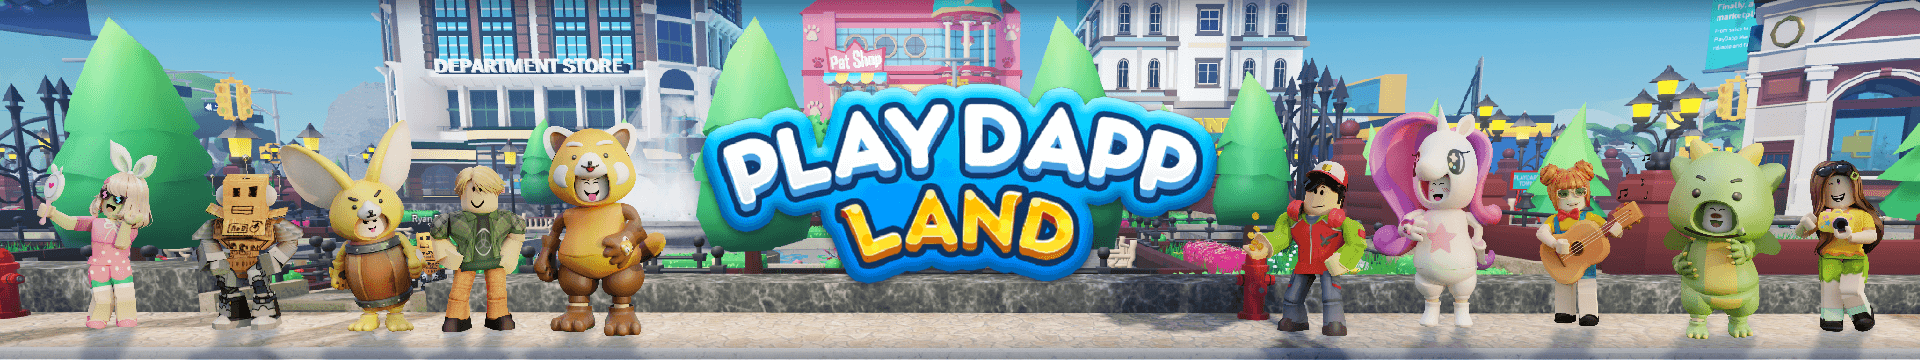 playdapp-land-banner